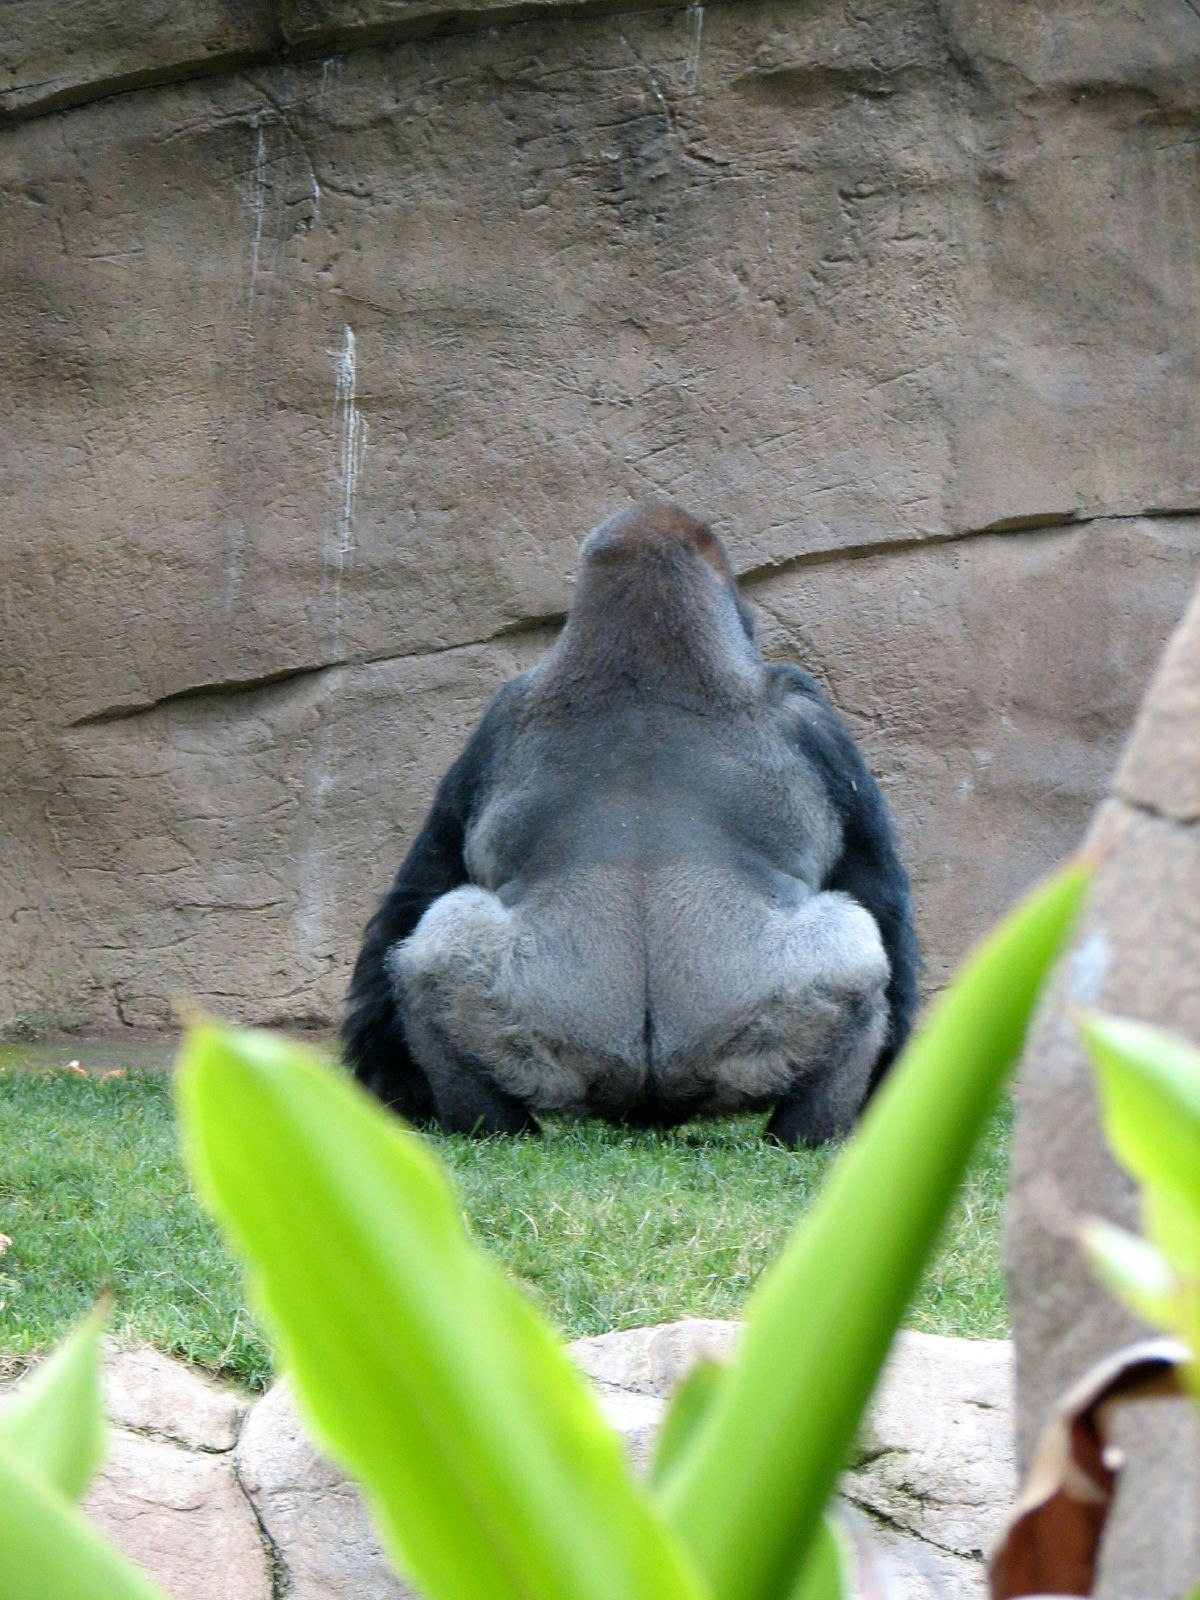 Gorilla bum cheek muscles